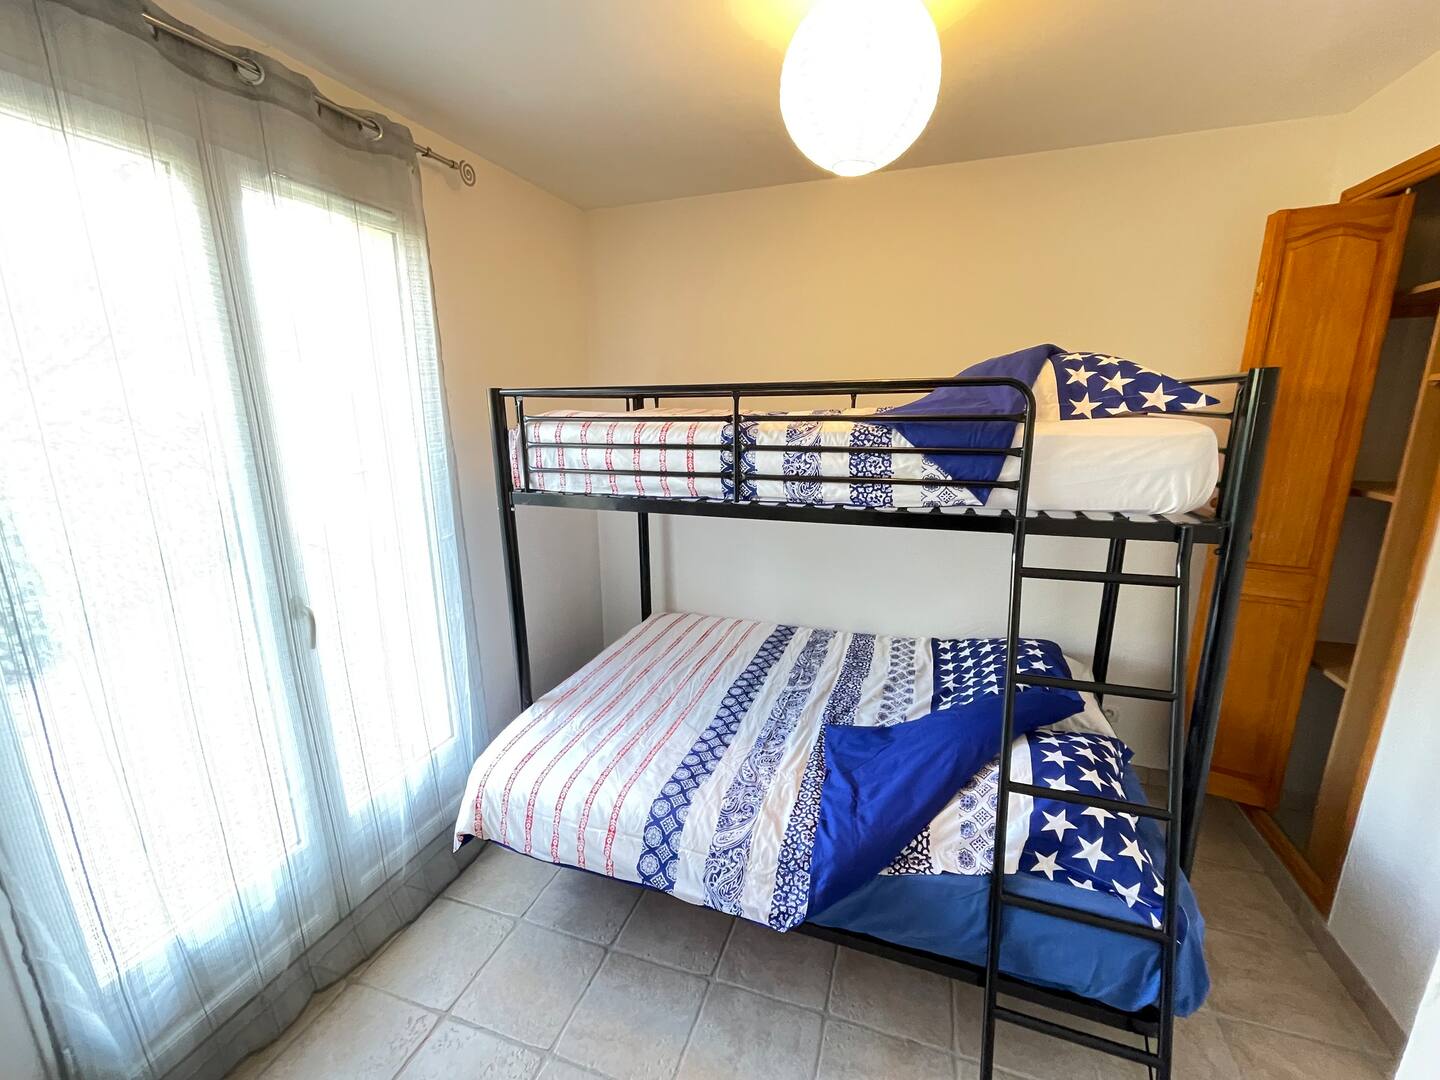 Chambre 2 lits superposés: Lit double et lit simple, accès vers petite terrasse. - Villa Chez Marc